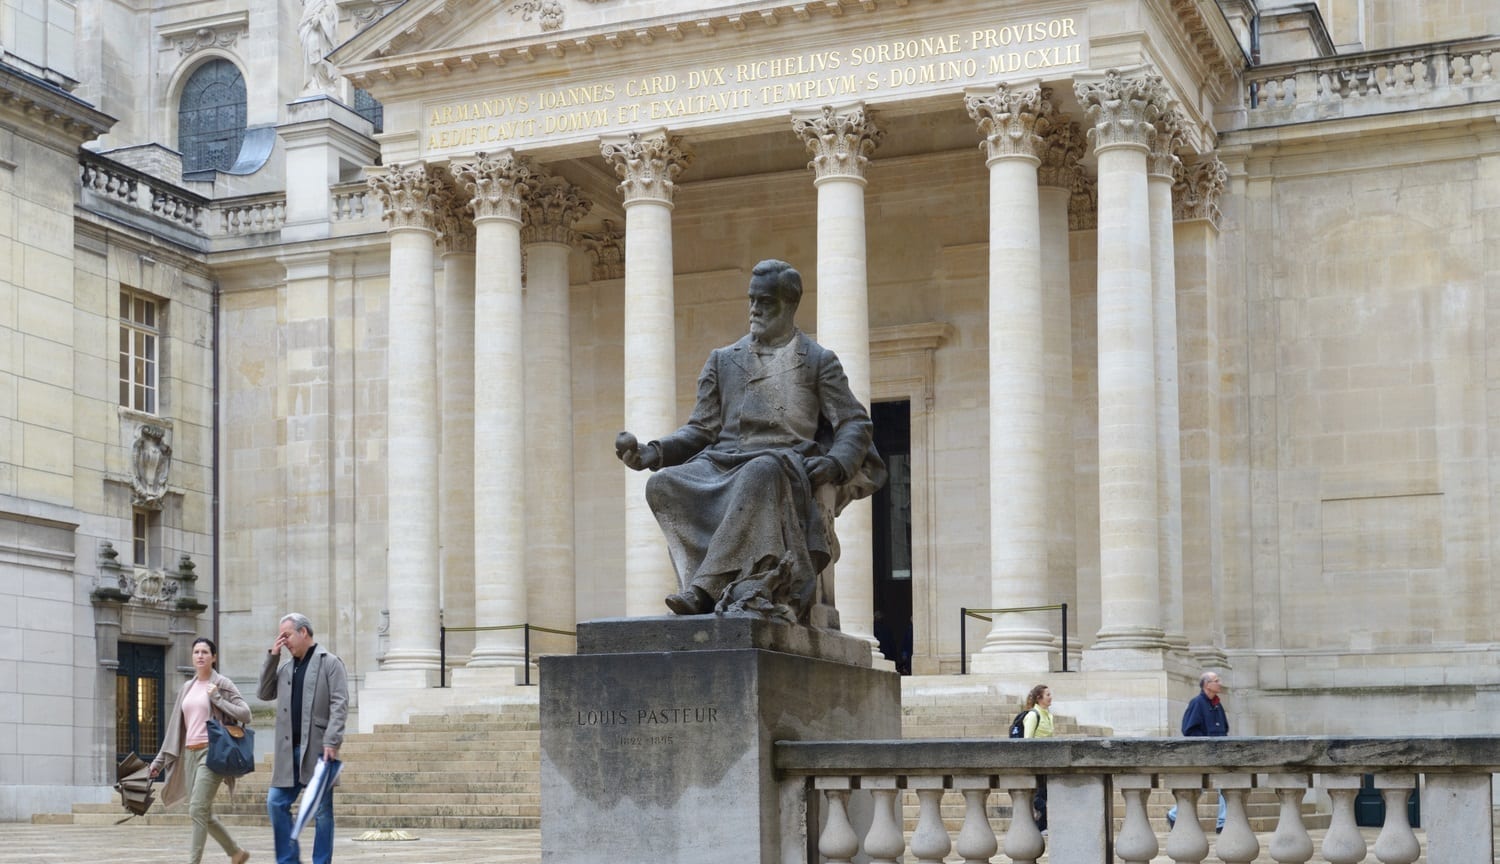 Pasteur statue: Photo credit: dreamstime 40356525